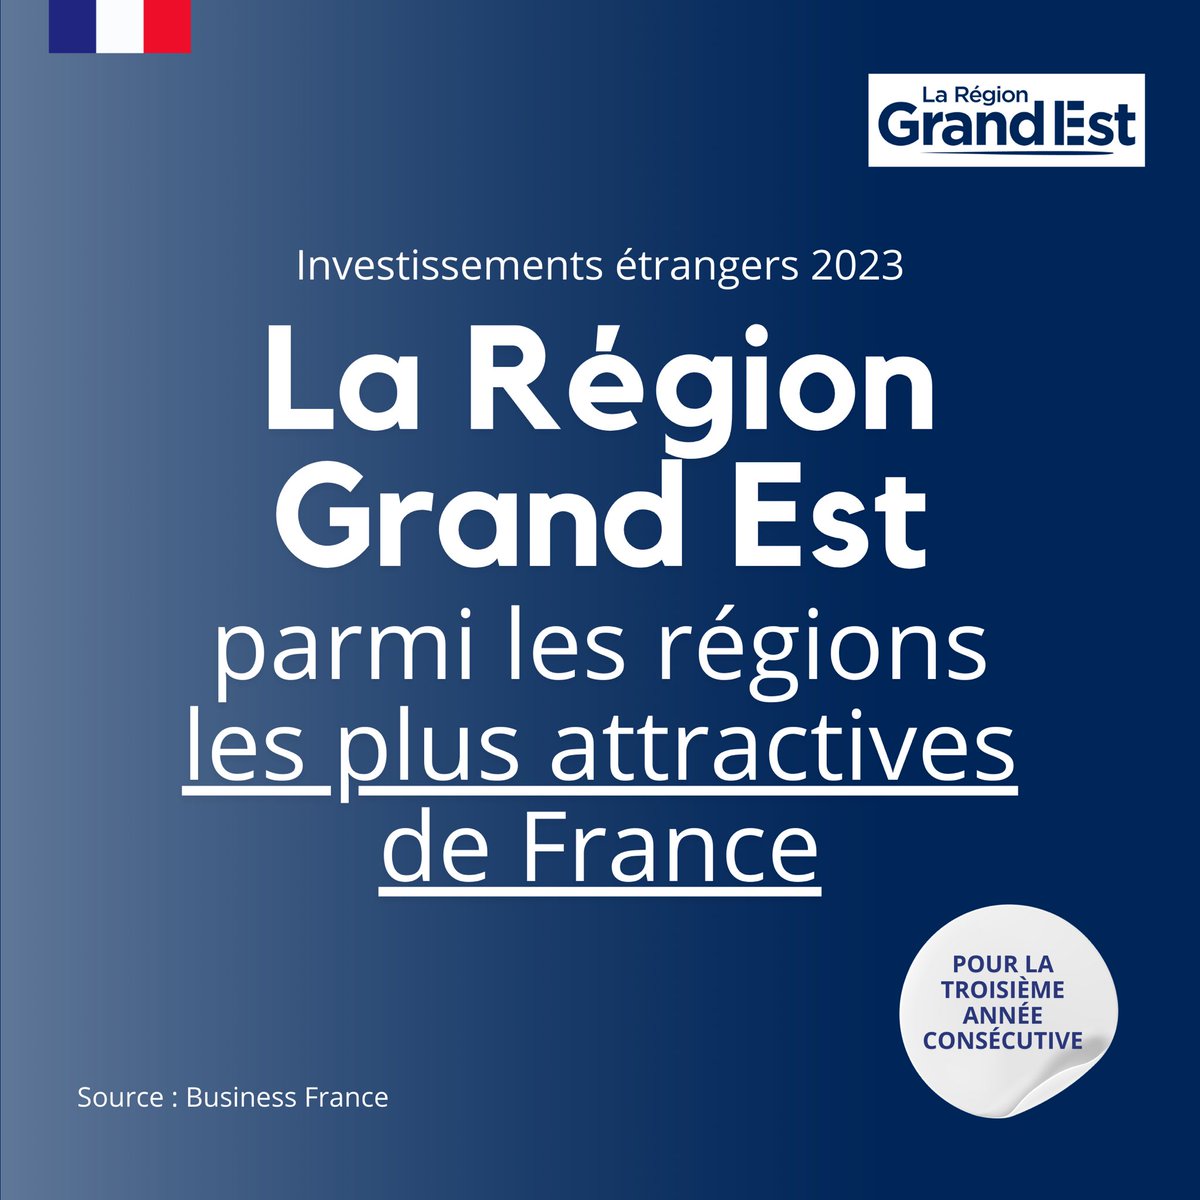 Pour la 3ème année consécutive, la @regiongrandest est reconnue comme l'une des plus attractives de France ! Nos stratégies enclenchées en faveur de la réindustrialisation et des transitions énergétique et environnementale fonctionnent. Les chiffres parlent d'eux même : en